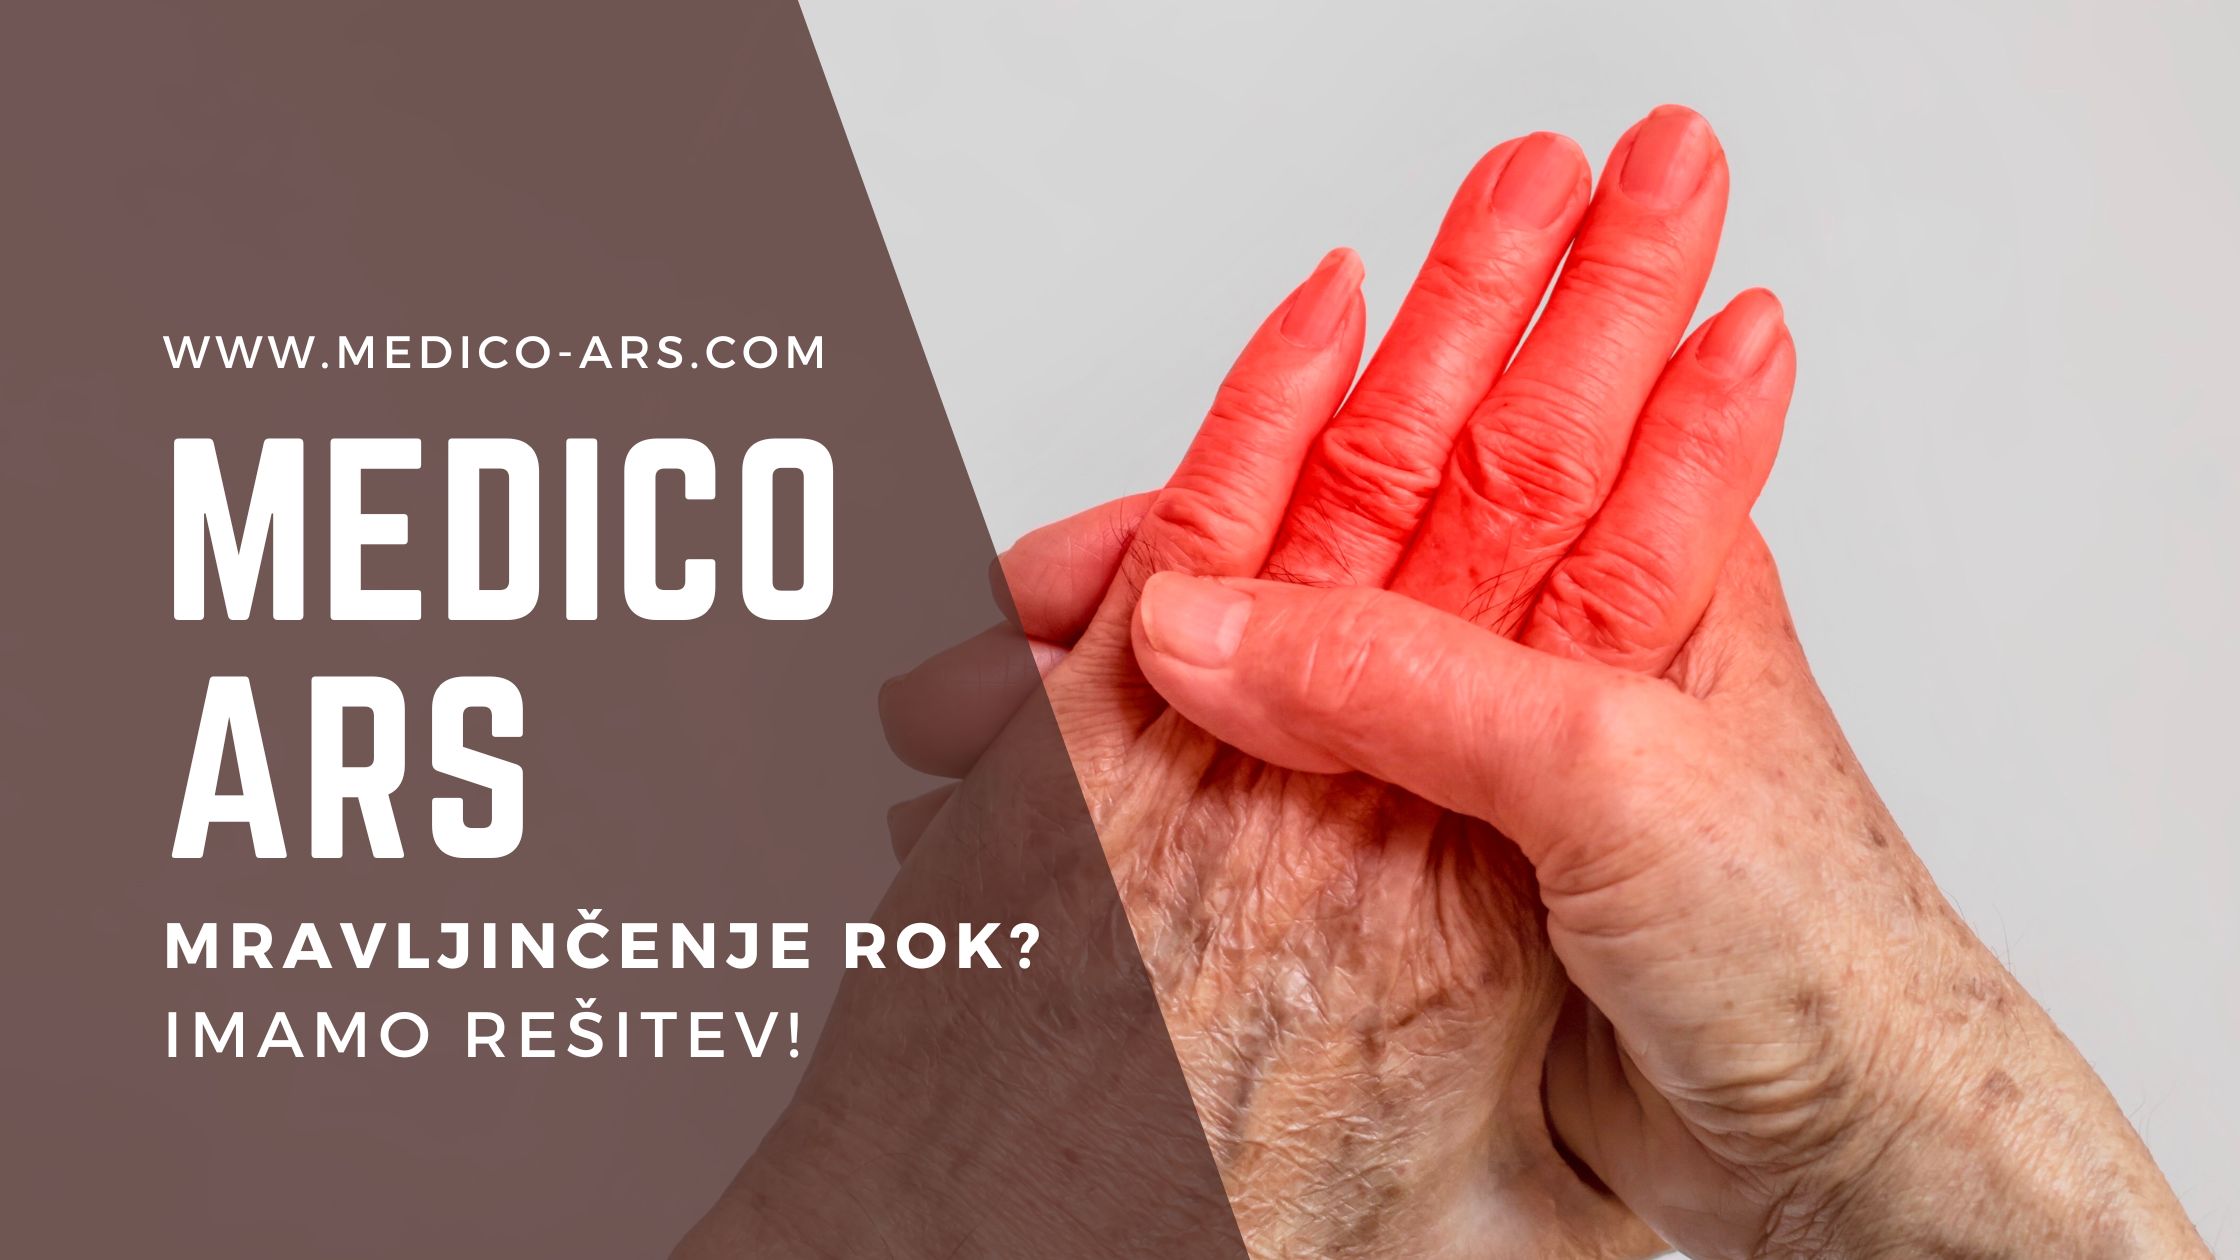 Promocijska slika za Medico Ars s spletno stranjo www.medico-ars.com in besedilom 'Mravljinčenje rok? Imamo rešitev!'. Na desni strani slike je prikazana roka, ki je rdeča, kar simbolizira bolečino ali mravljinčenje.